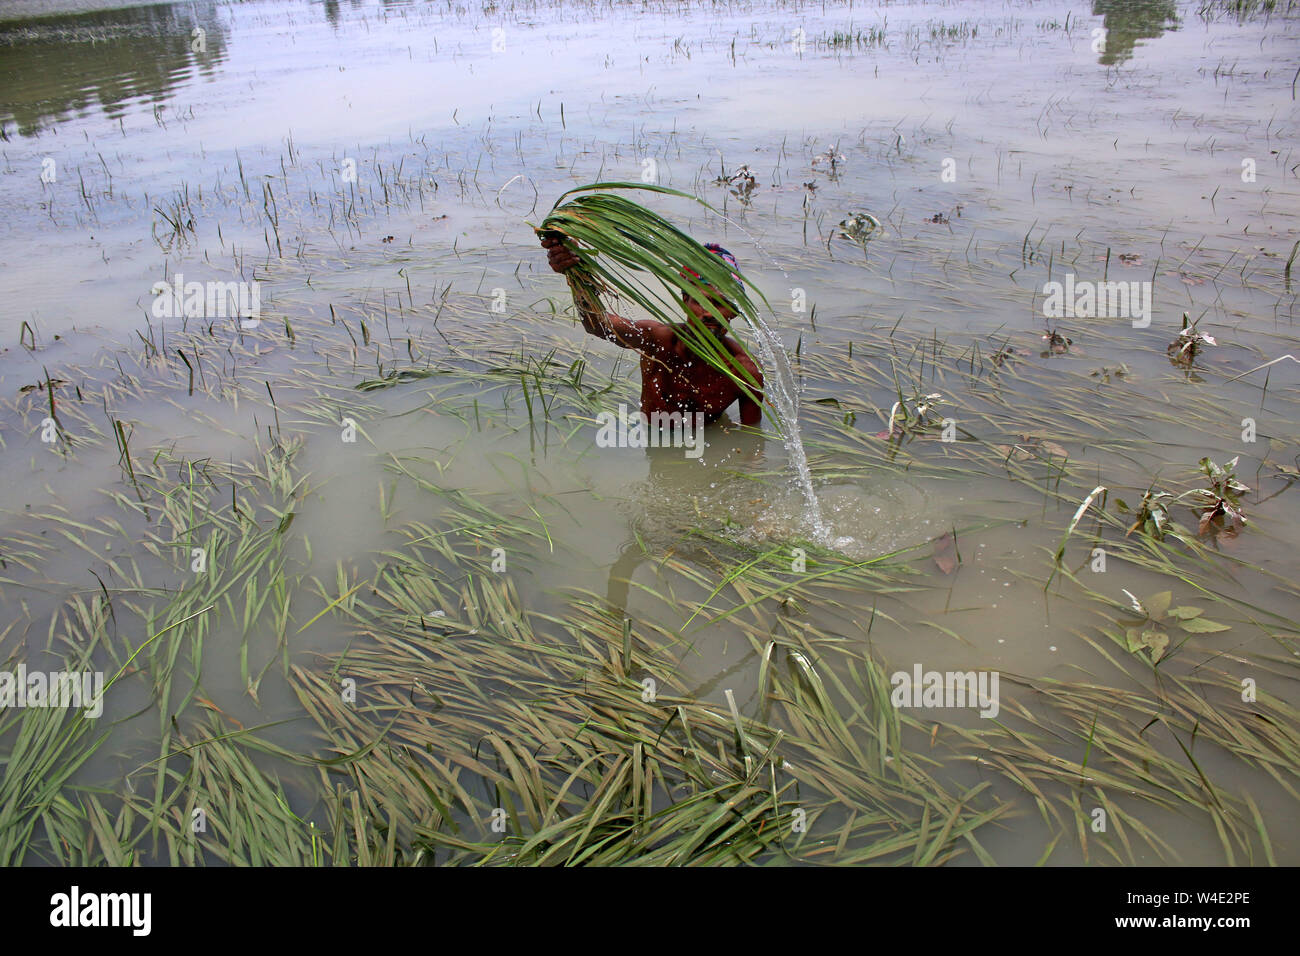 Tangail, Bangladesch. 22. Juli, 2019. Ein Bauer prüft seine Flut - beschädigt die Ernte von Reis in Tangail Bezirk. Über millionen Menschen durch Überschwemmungen durch den Monsun Regen und ausufernden Fluss im Norden, Nordosten und hügeligen Regionen in Bangladesch ausgelöst haben. Bild: Sultan Mahmud Mukut/SOPA Images/ZUMA Draht/Alamy leben Nachrichten Stockfoto